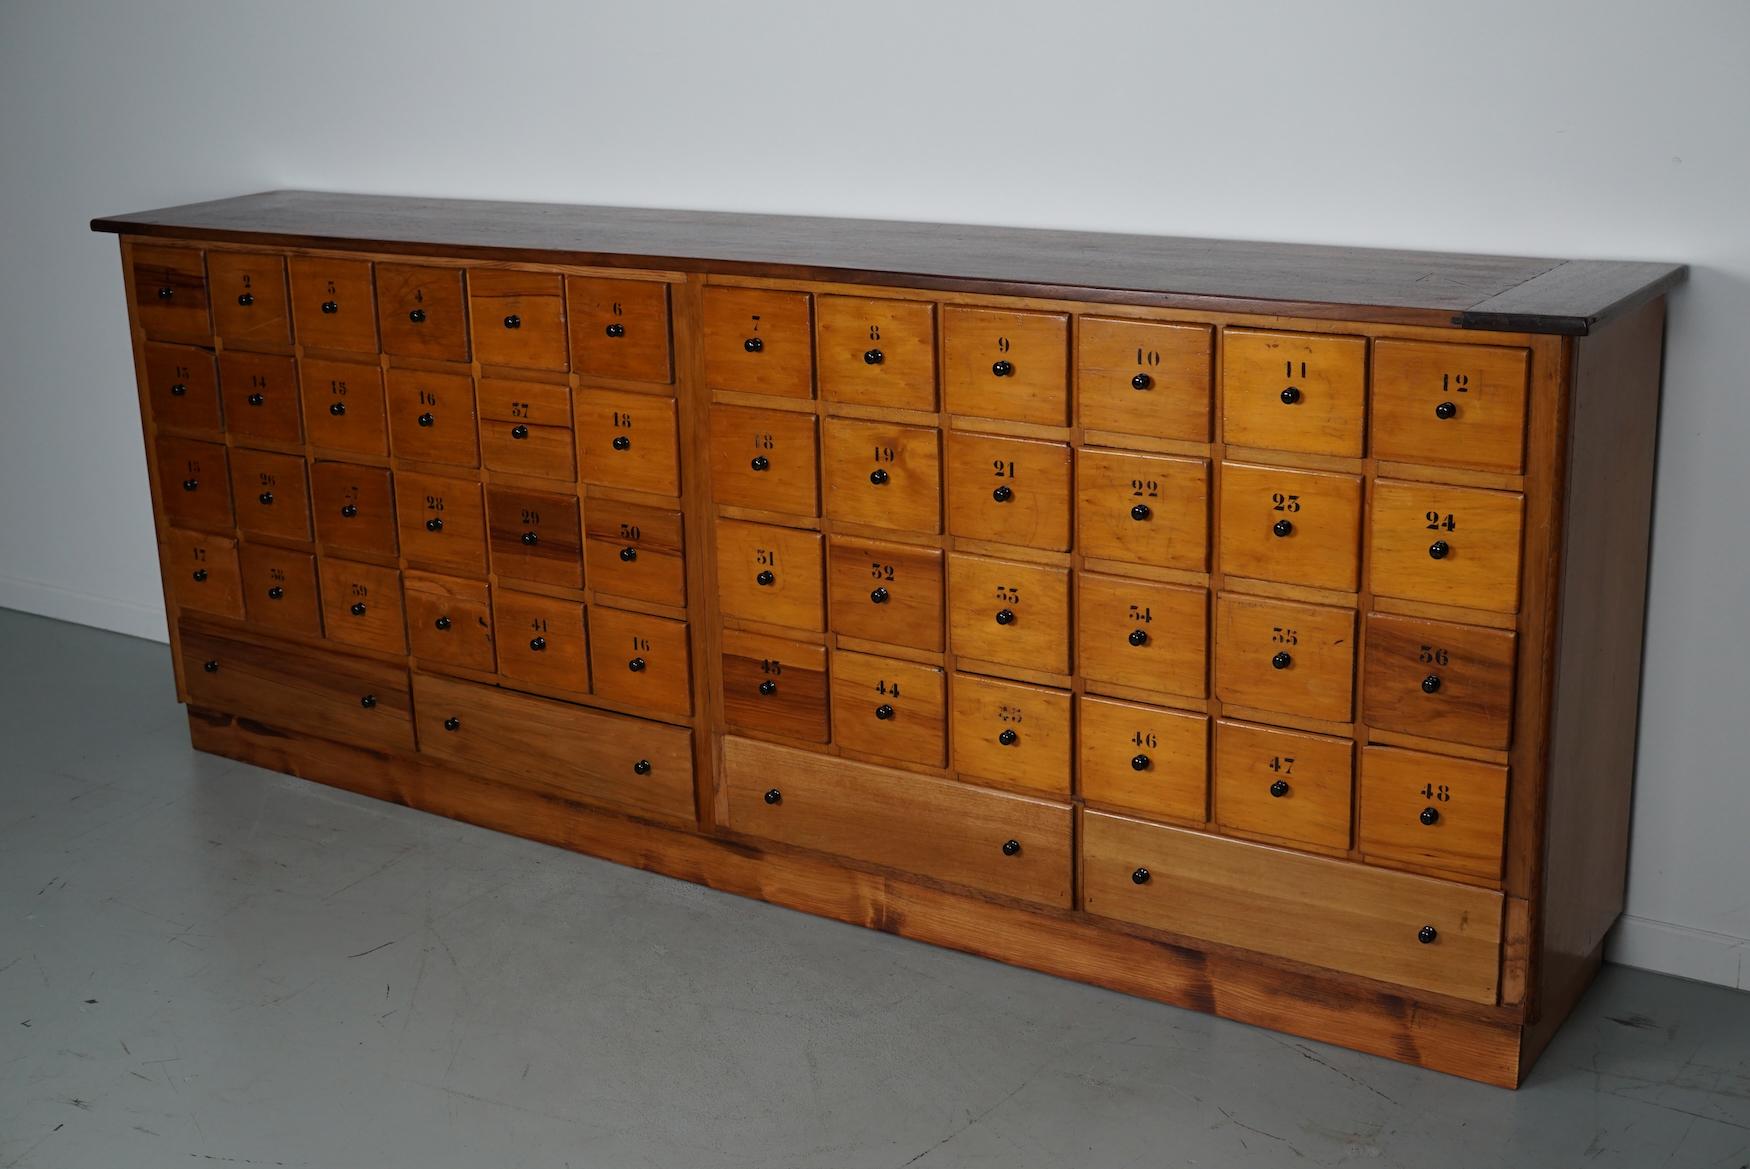 Cette banque d'apothicaire à tiroirs a été conçue et fabriquée vers 1950 aux Pays-Bas. Il a été fabriqué en hêtre et comporte 52 tiroirs avec des boutons et des numéros en métal noir. Les dimensions intérieures des tiroirs sont les suivantes : DWH